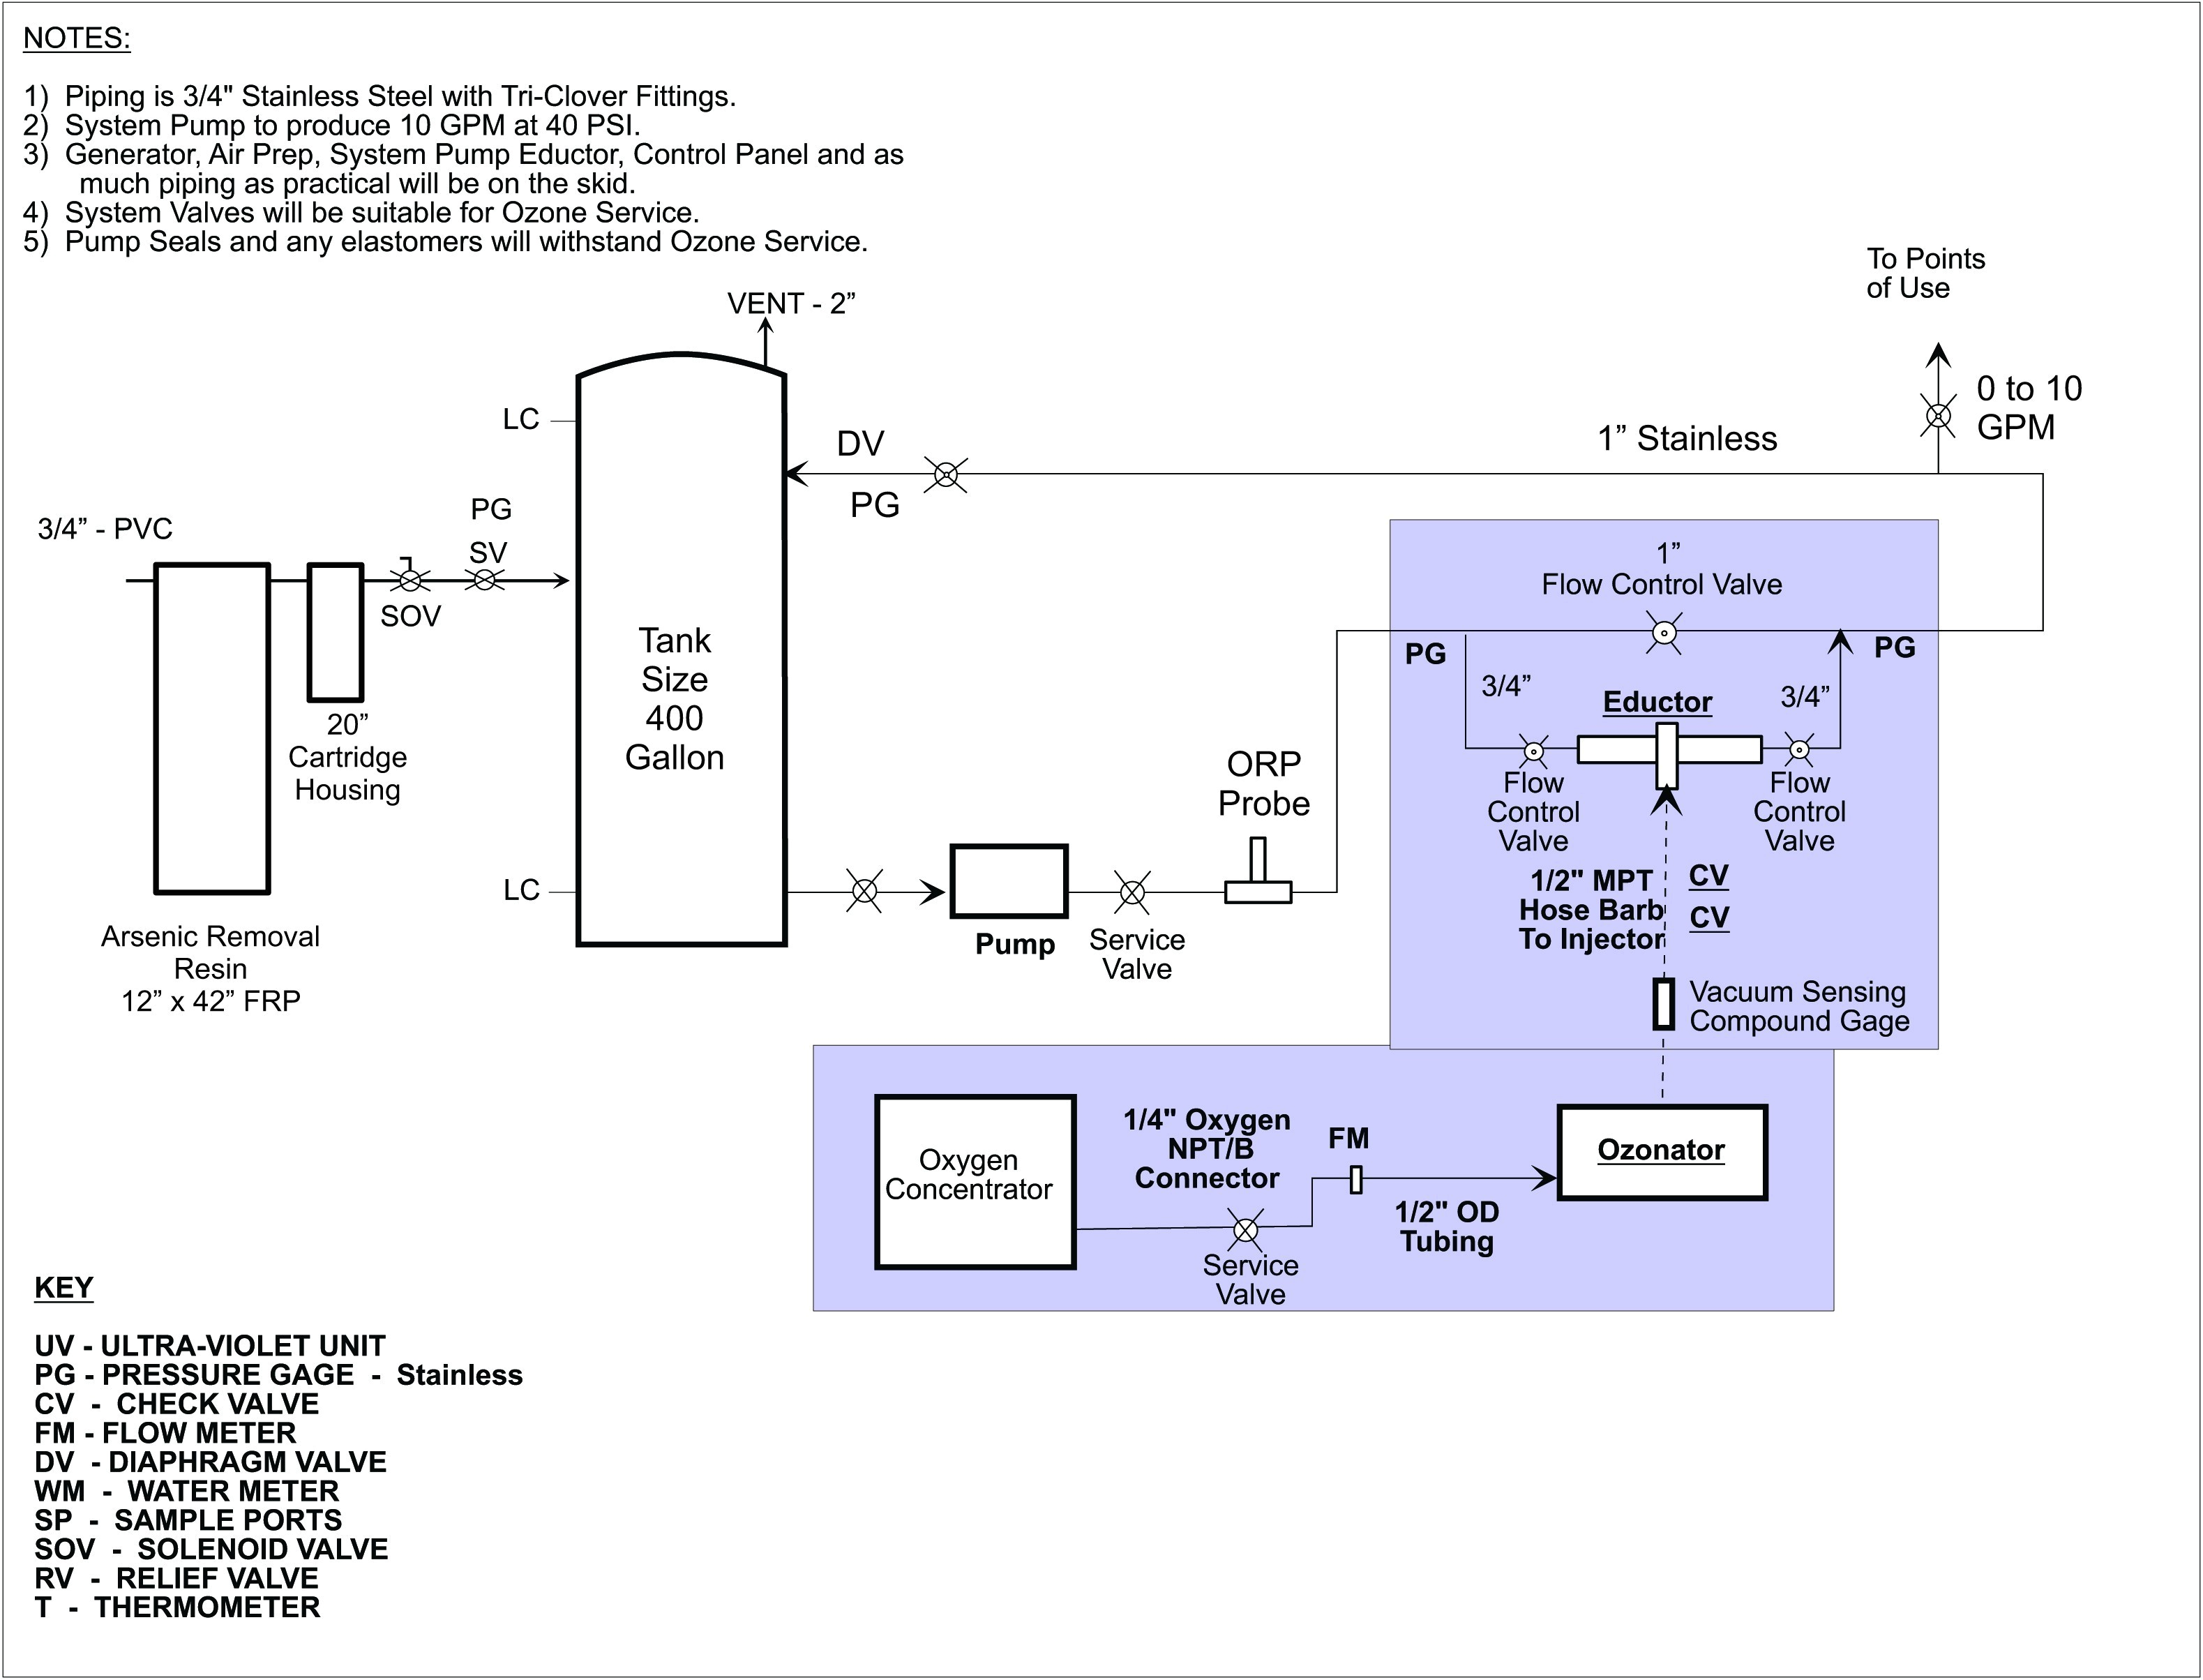 tamper wiring diagram for wiring diagram schematictamper alarm circuit diagram tradeoficcom schema diagram database tamper wiring